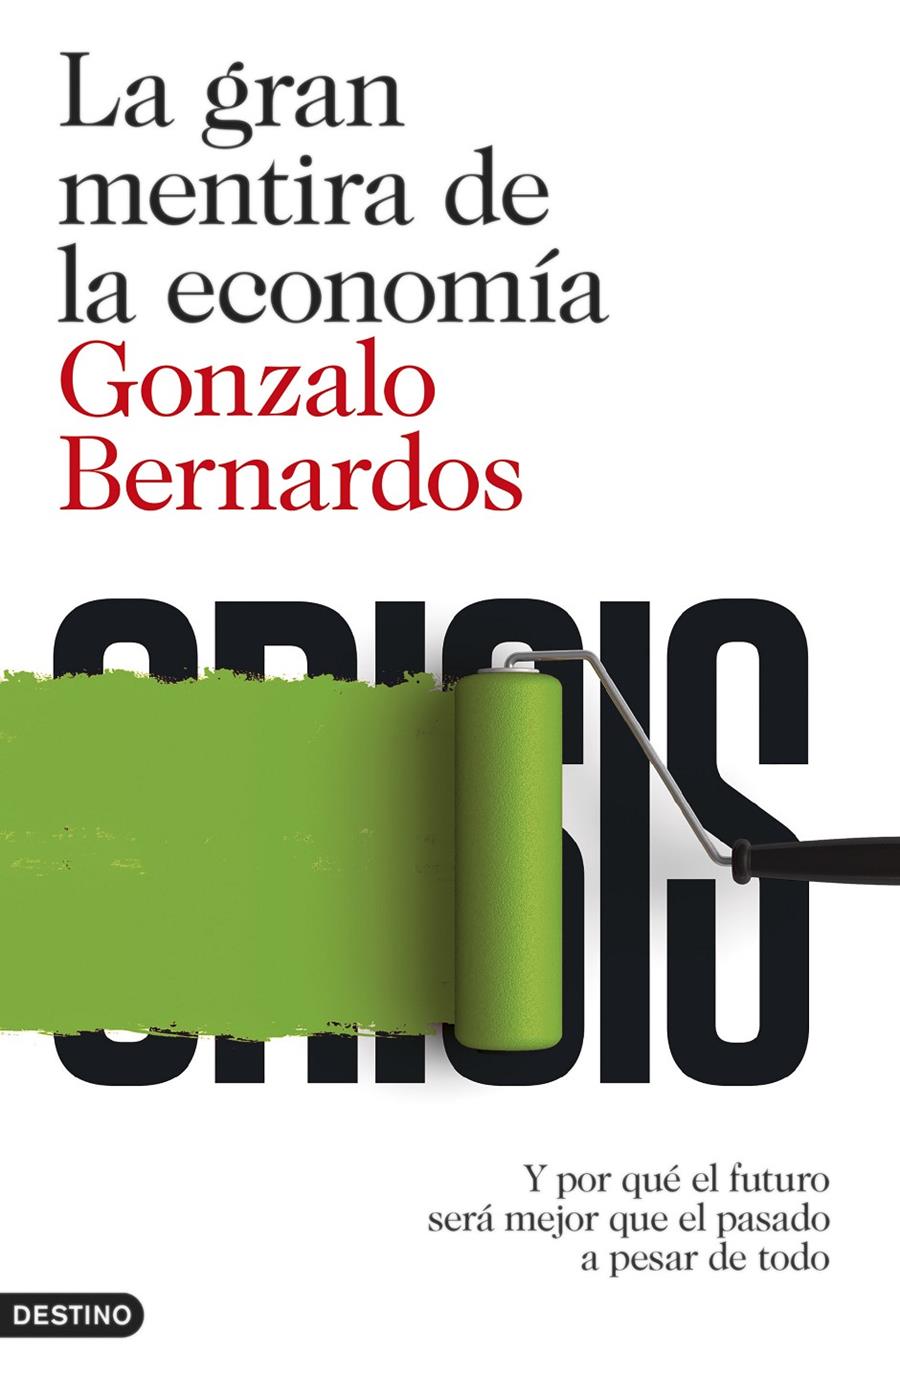 La gran mentira de la economía | Gonzalo Bernardos